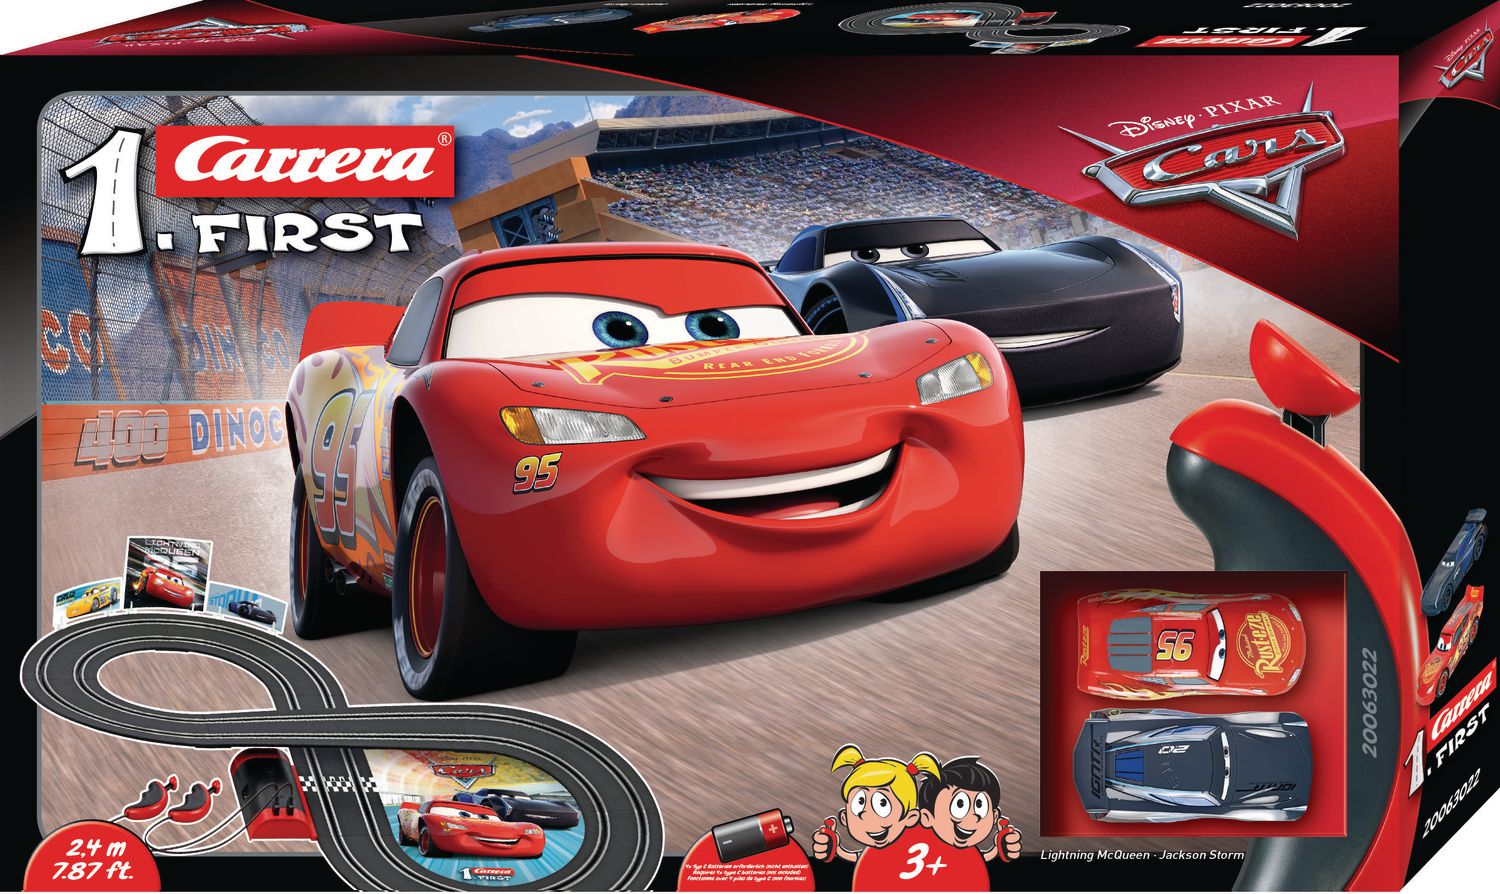 Carrera First Disney Pixar Cars Playset | Walmart Canada